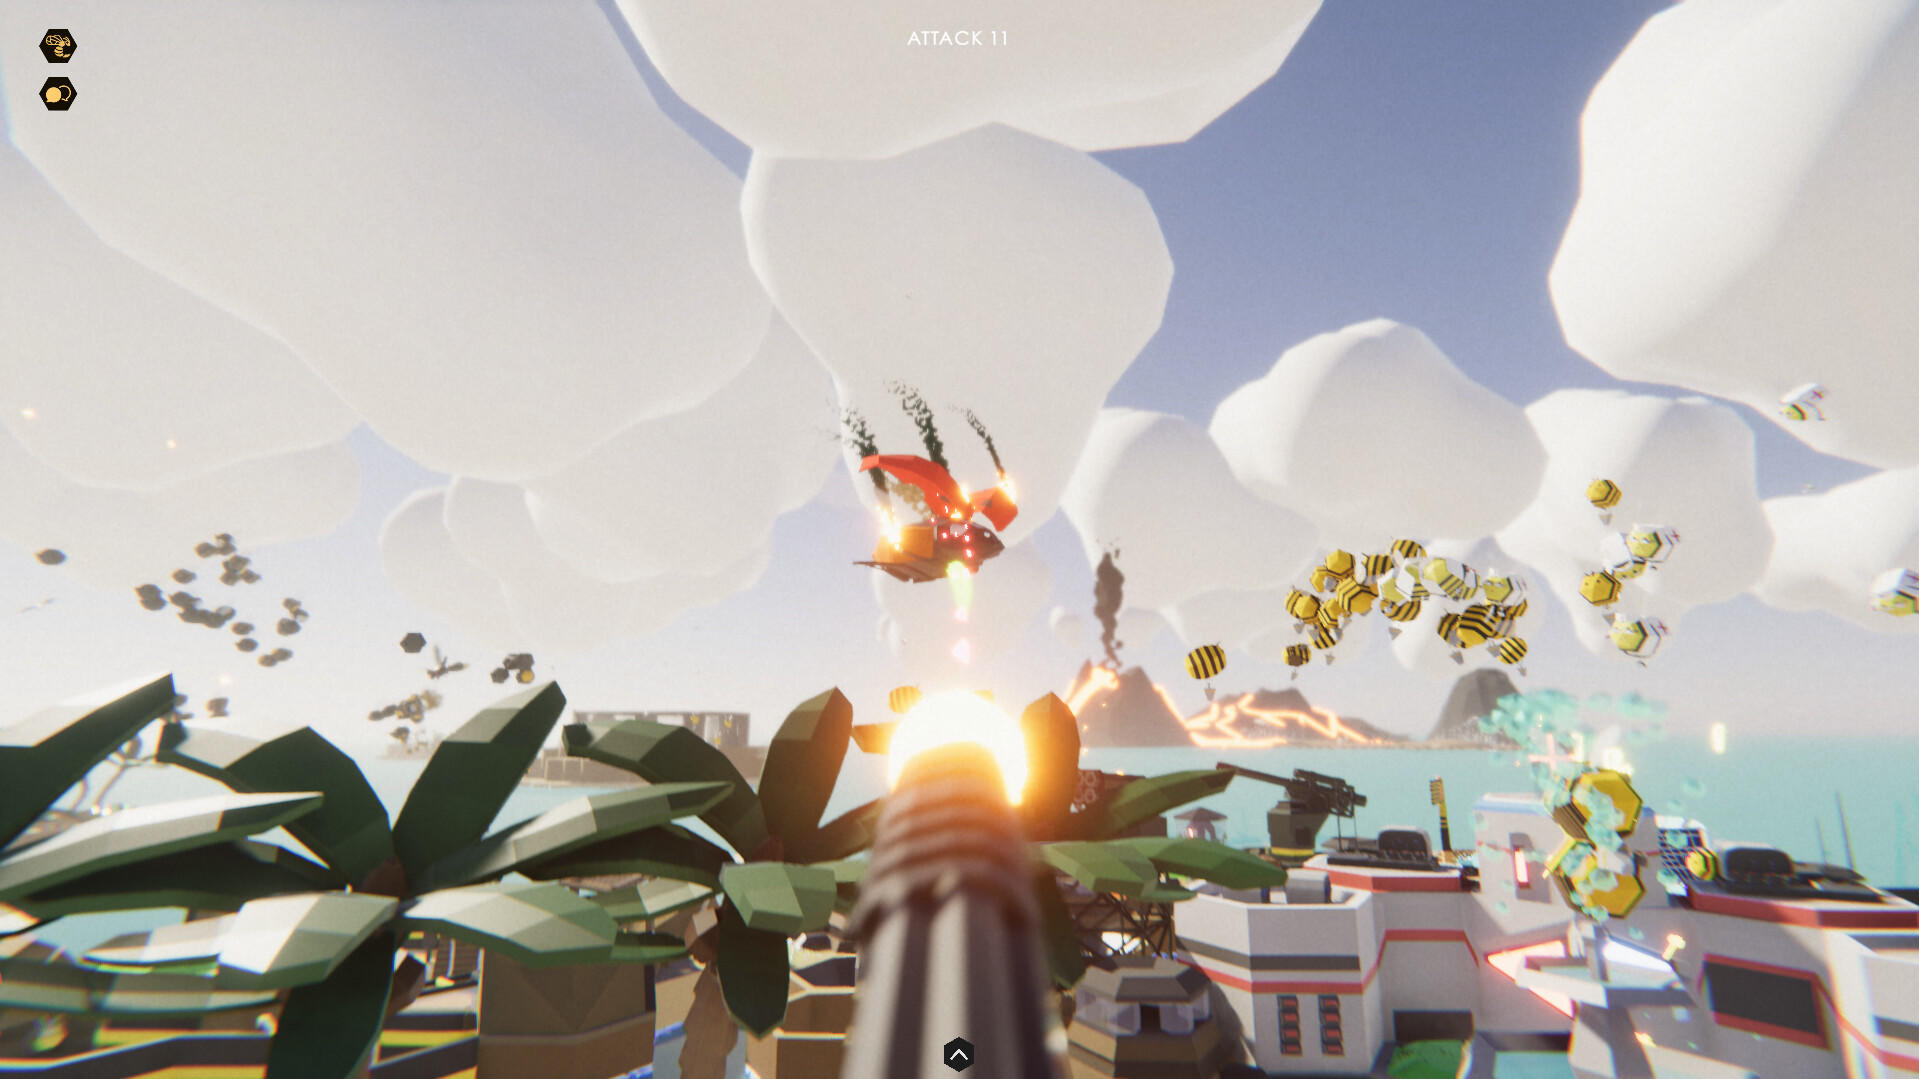 Bee Island screenshot game